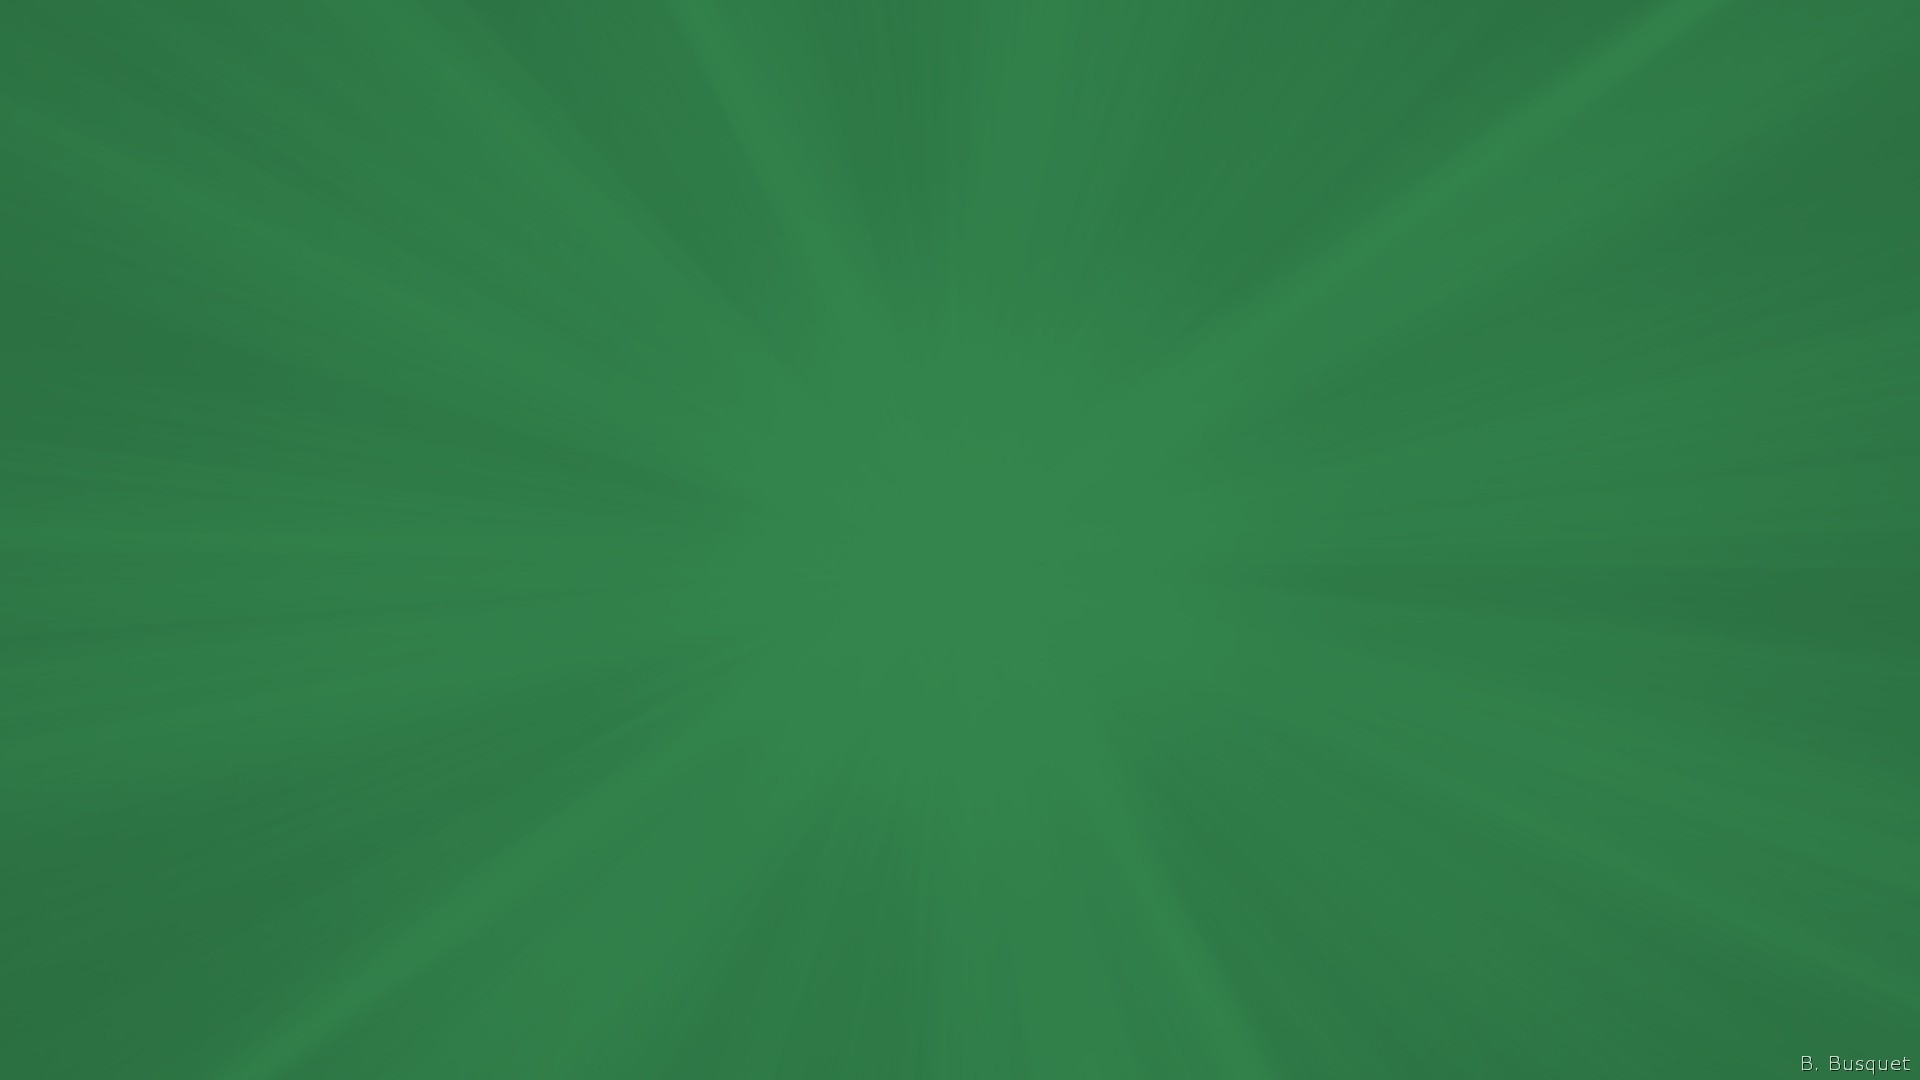 シンプルな緑の壁紙,緑,葉,草,フローリング